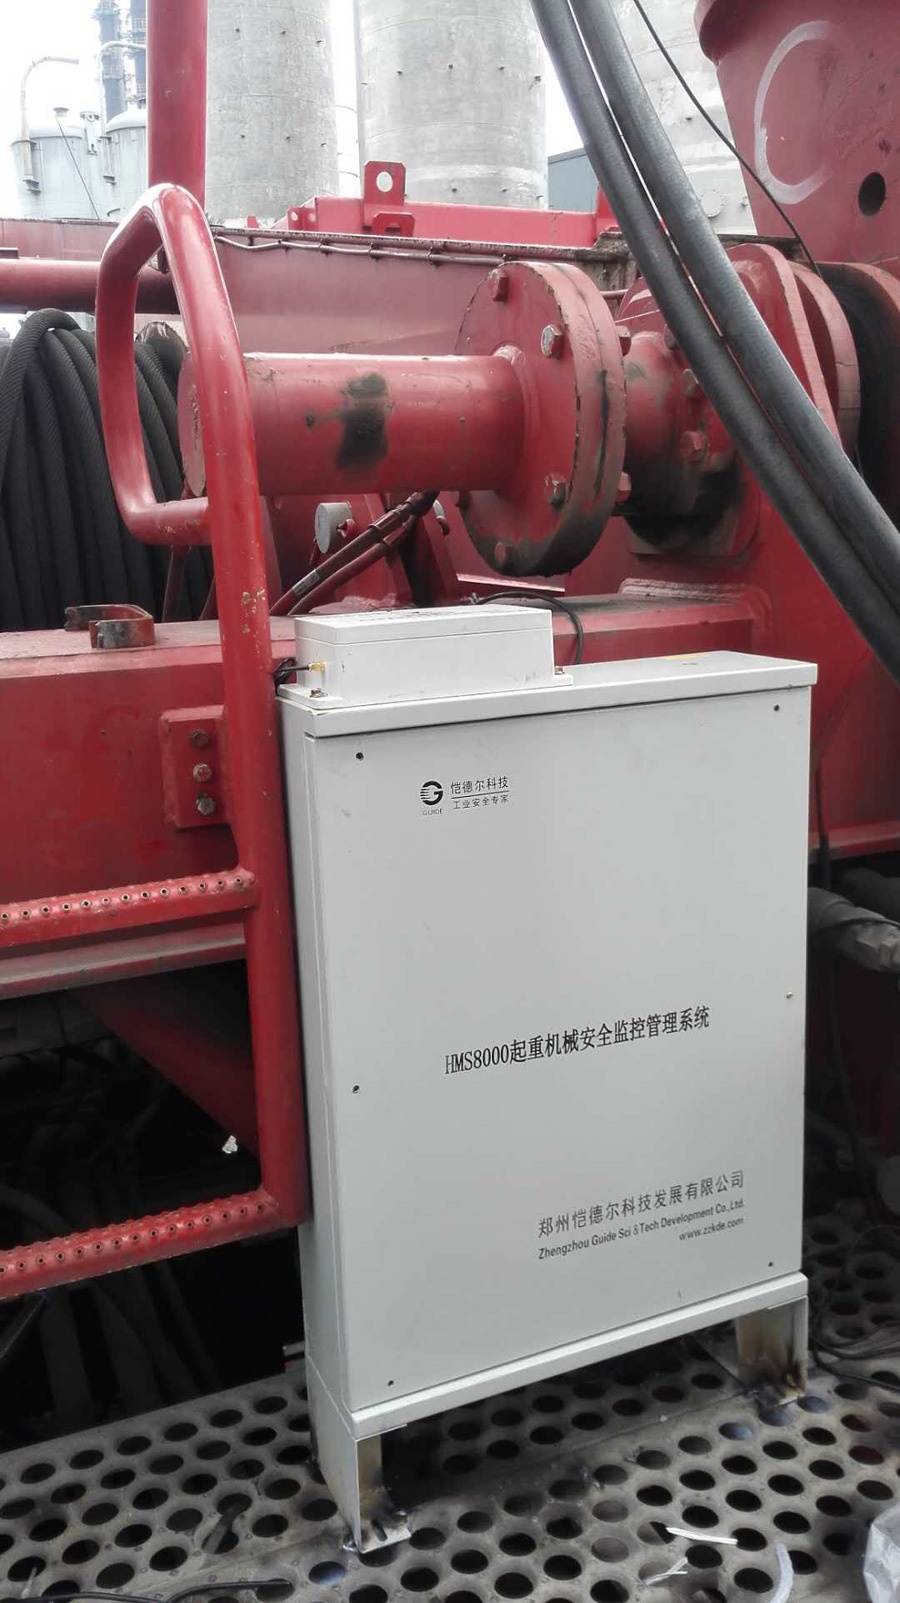 黑龙江七台河履带吊安全监控管理系统安装调试现场